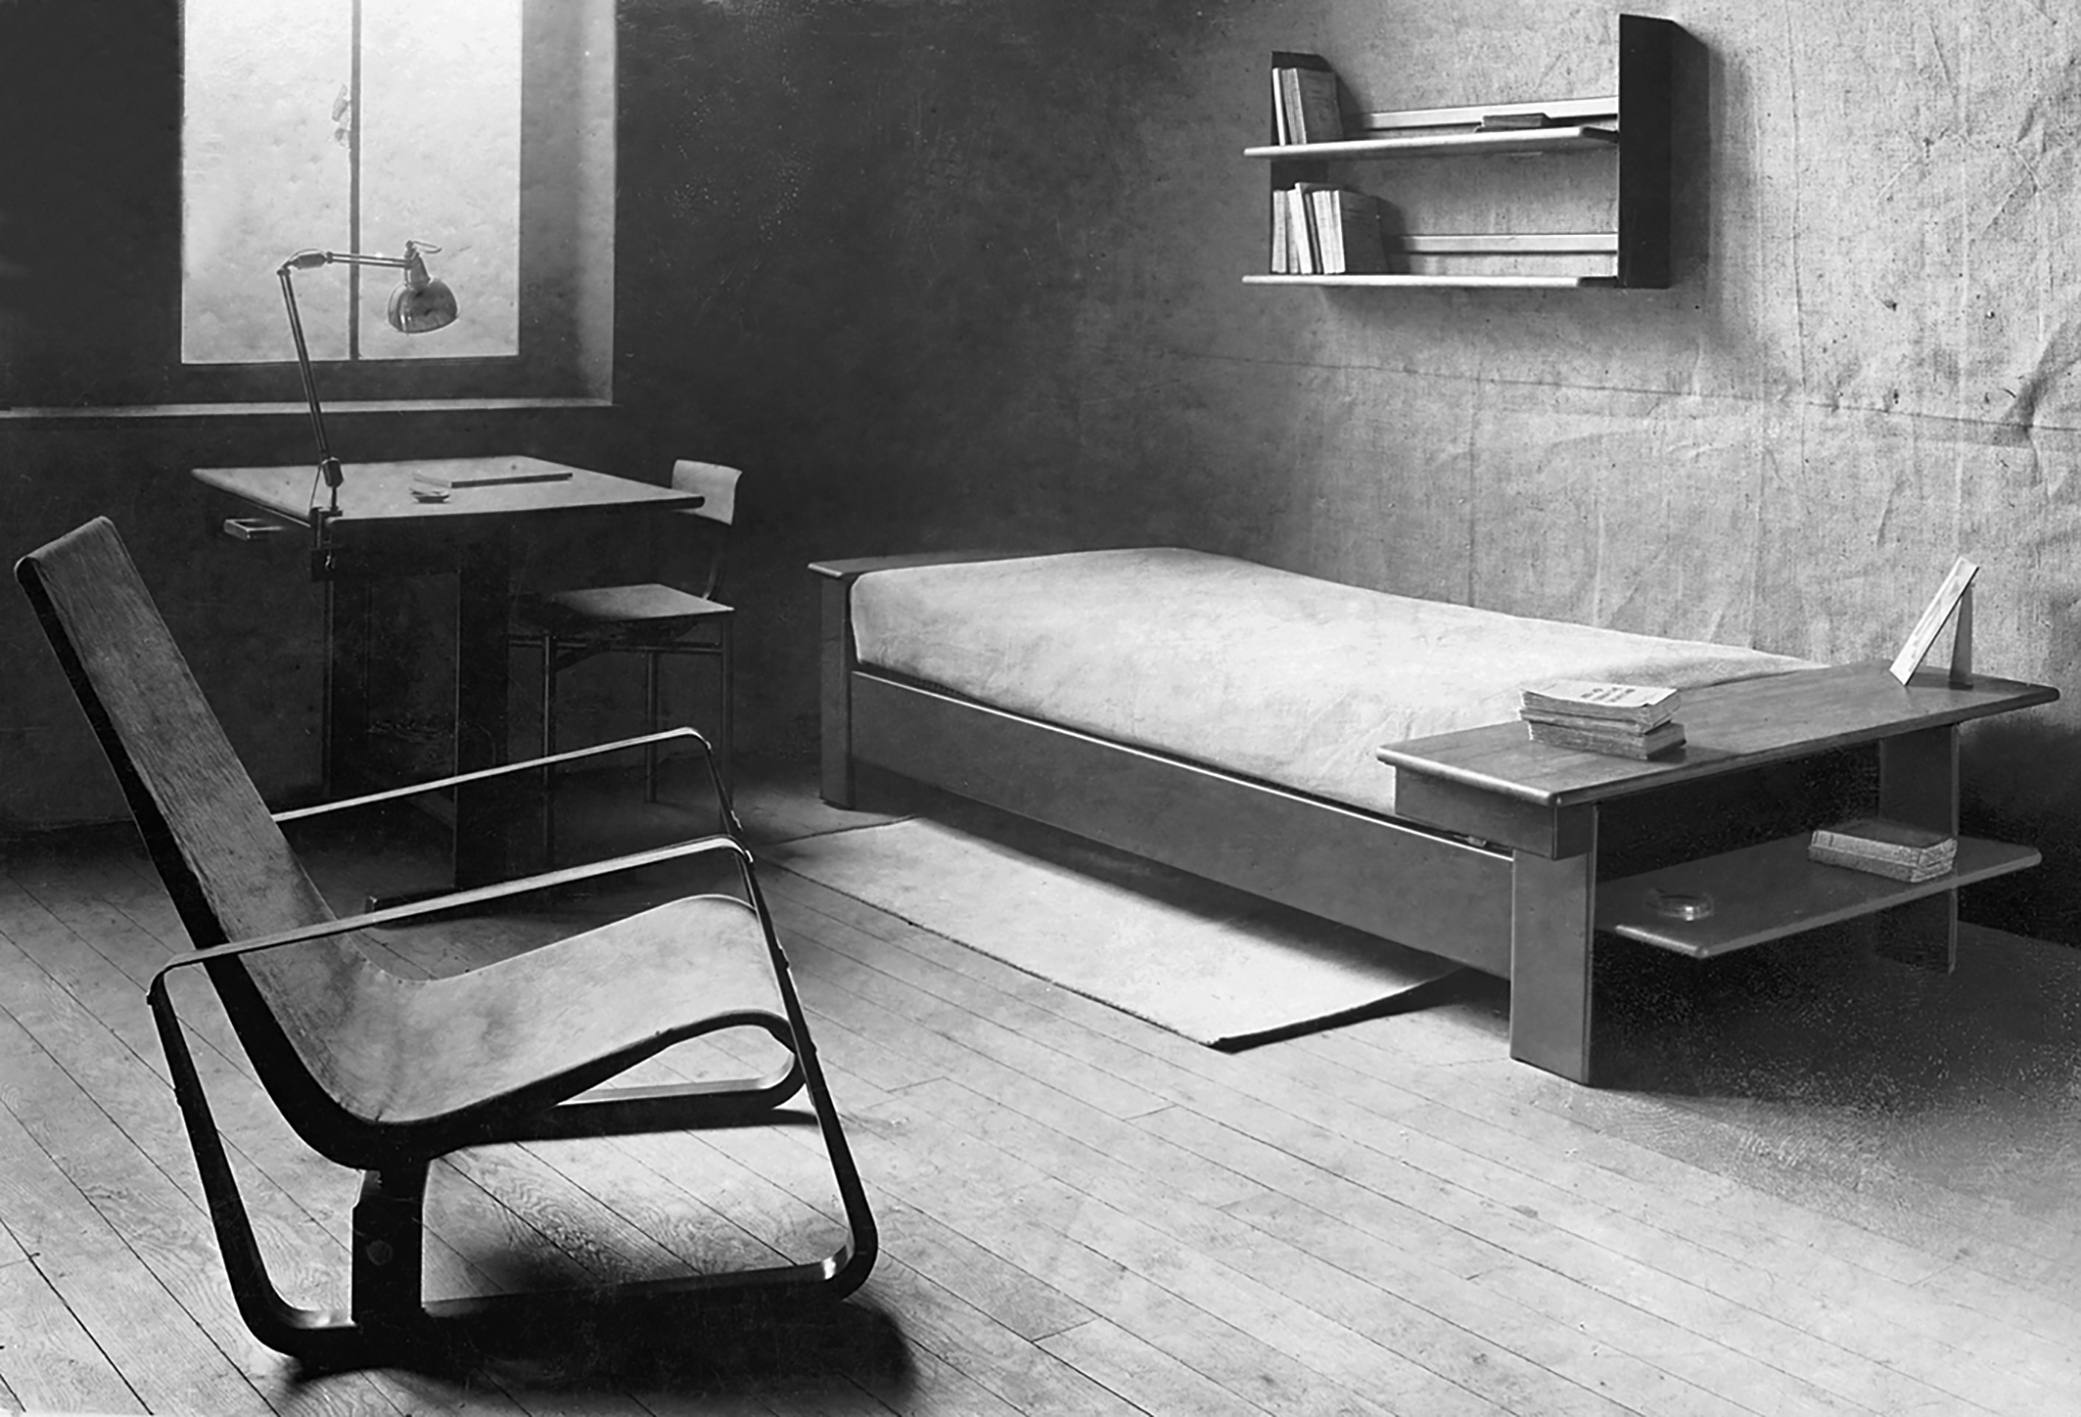 Chambre prototype présentée au concours pour l’ameublement de la cité universitaire de Nancy, c. 1930 : fauteuil, lit, étagère, table et chaise Cité.